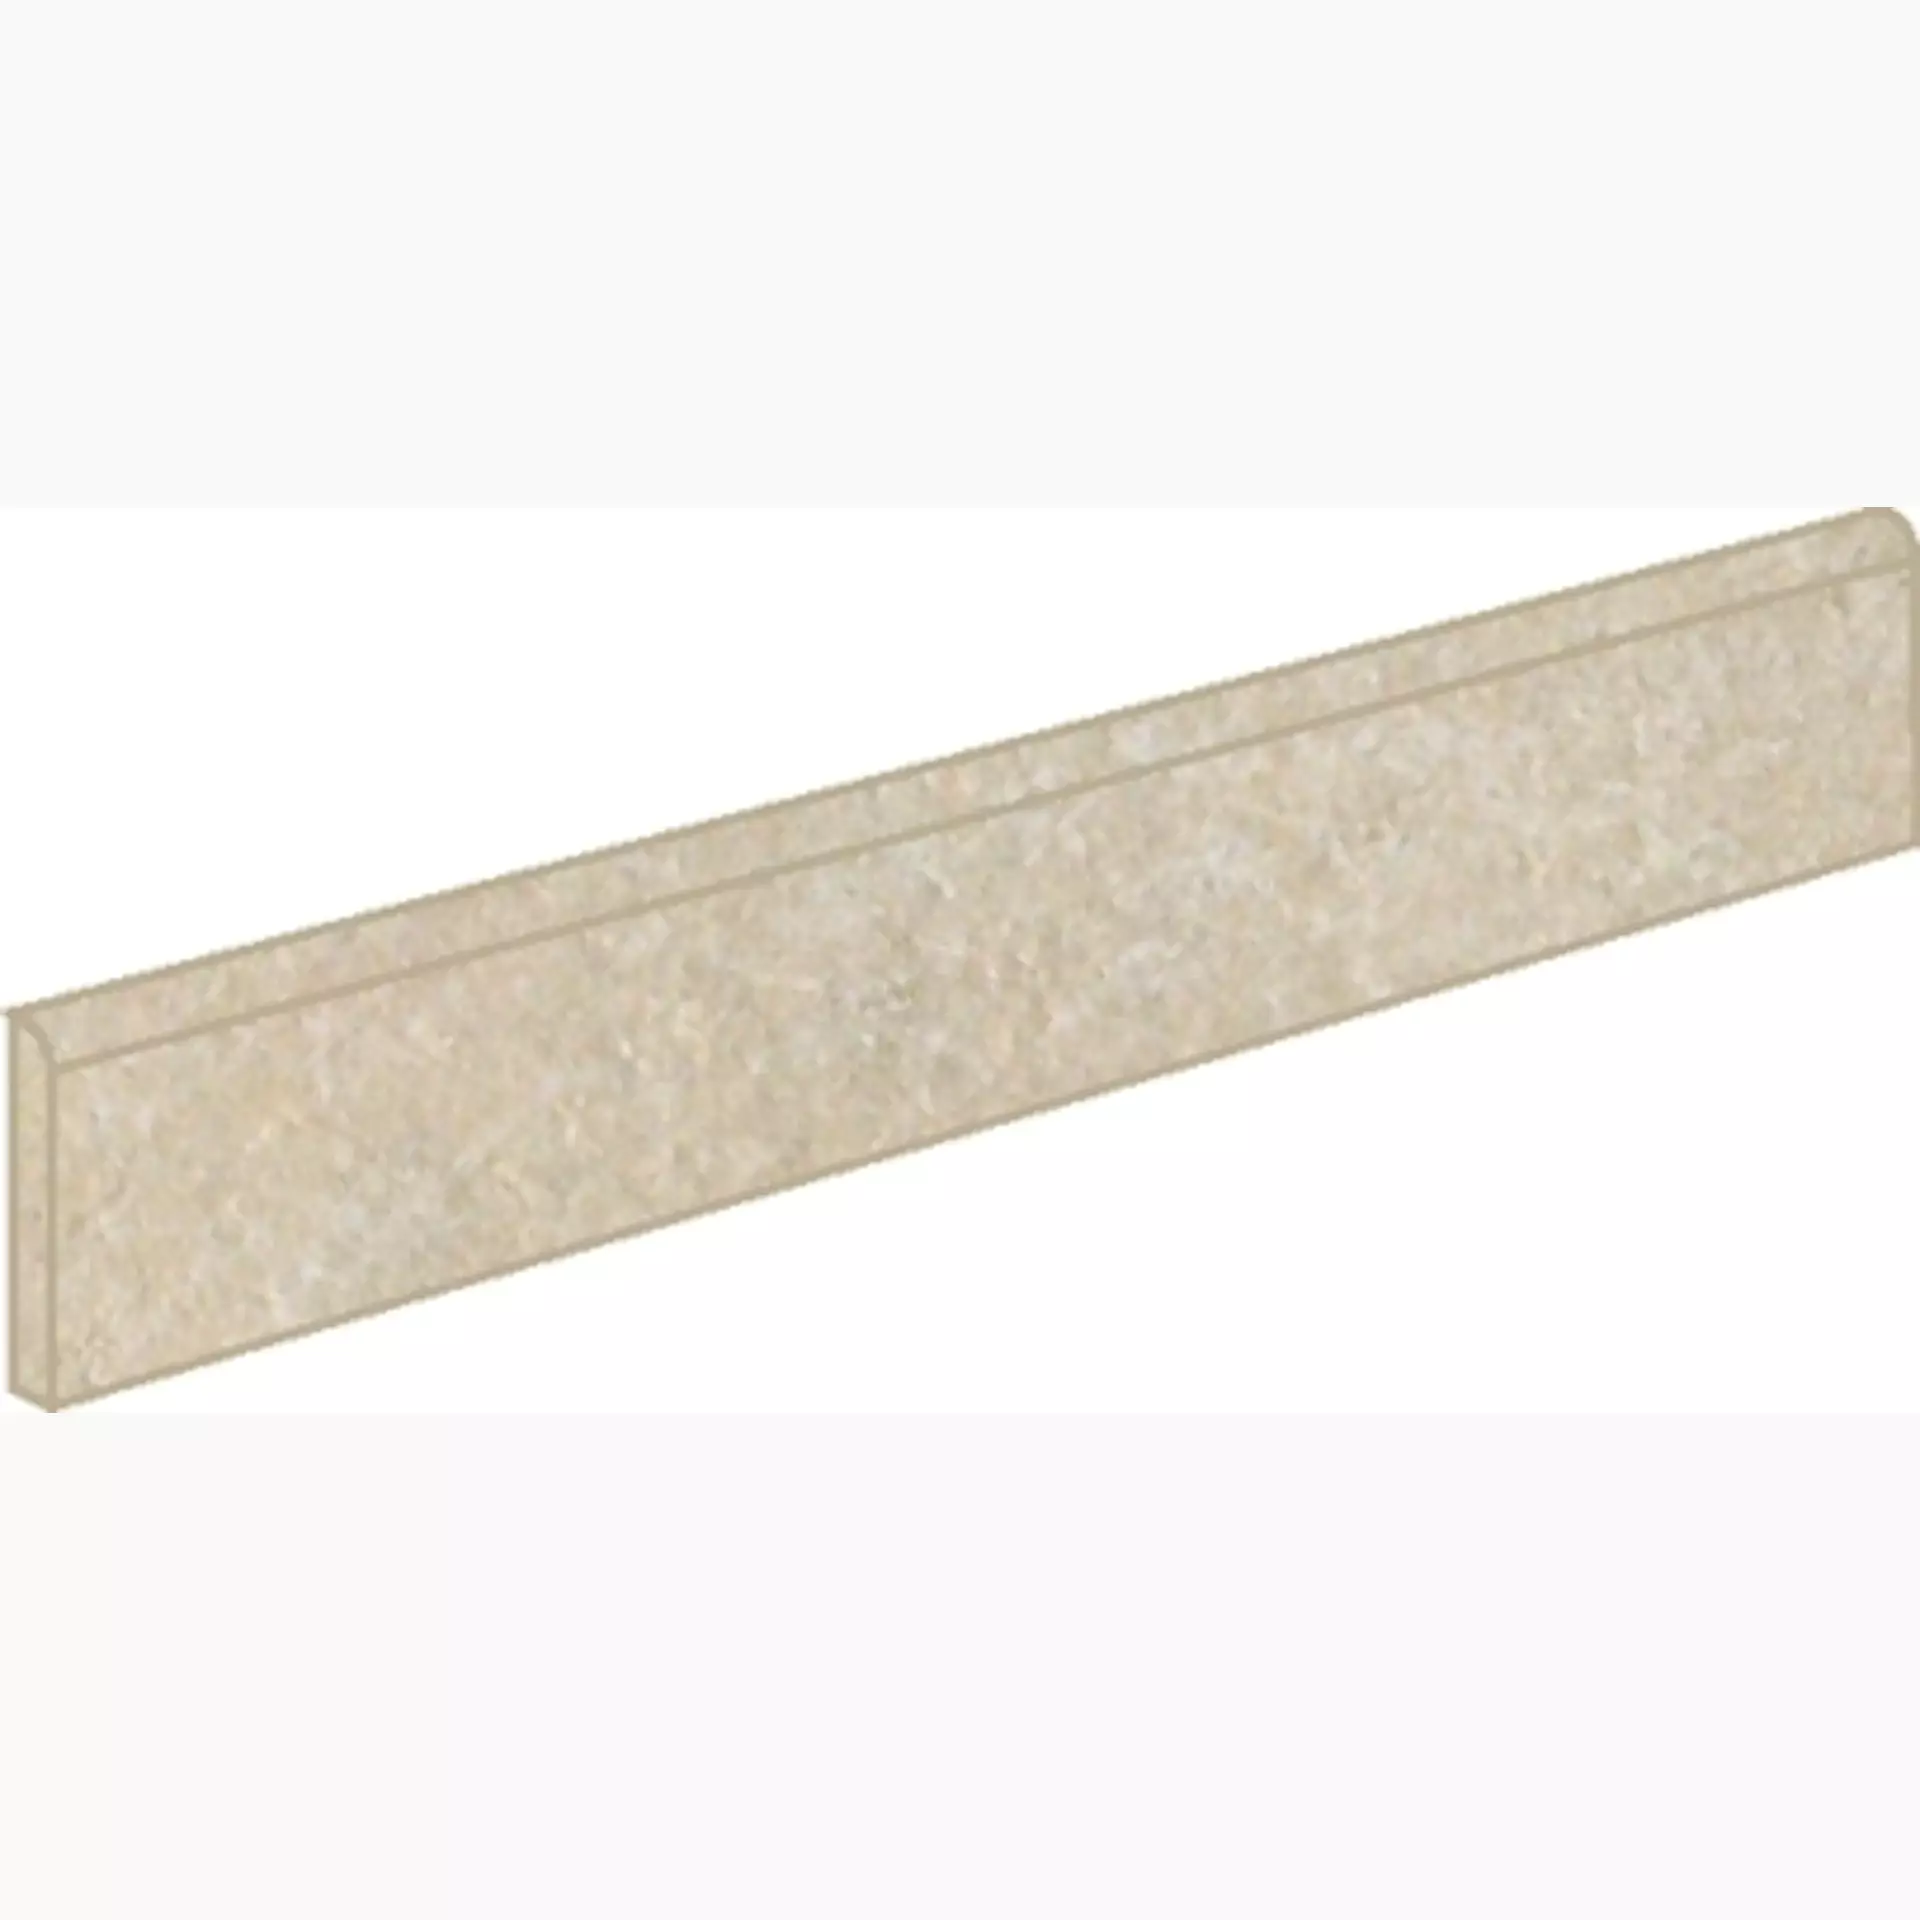 Sichenia Pave' Quarz Esterno Dorato Grip Skirting board 00B6628 7x60cm 10mm